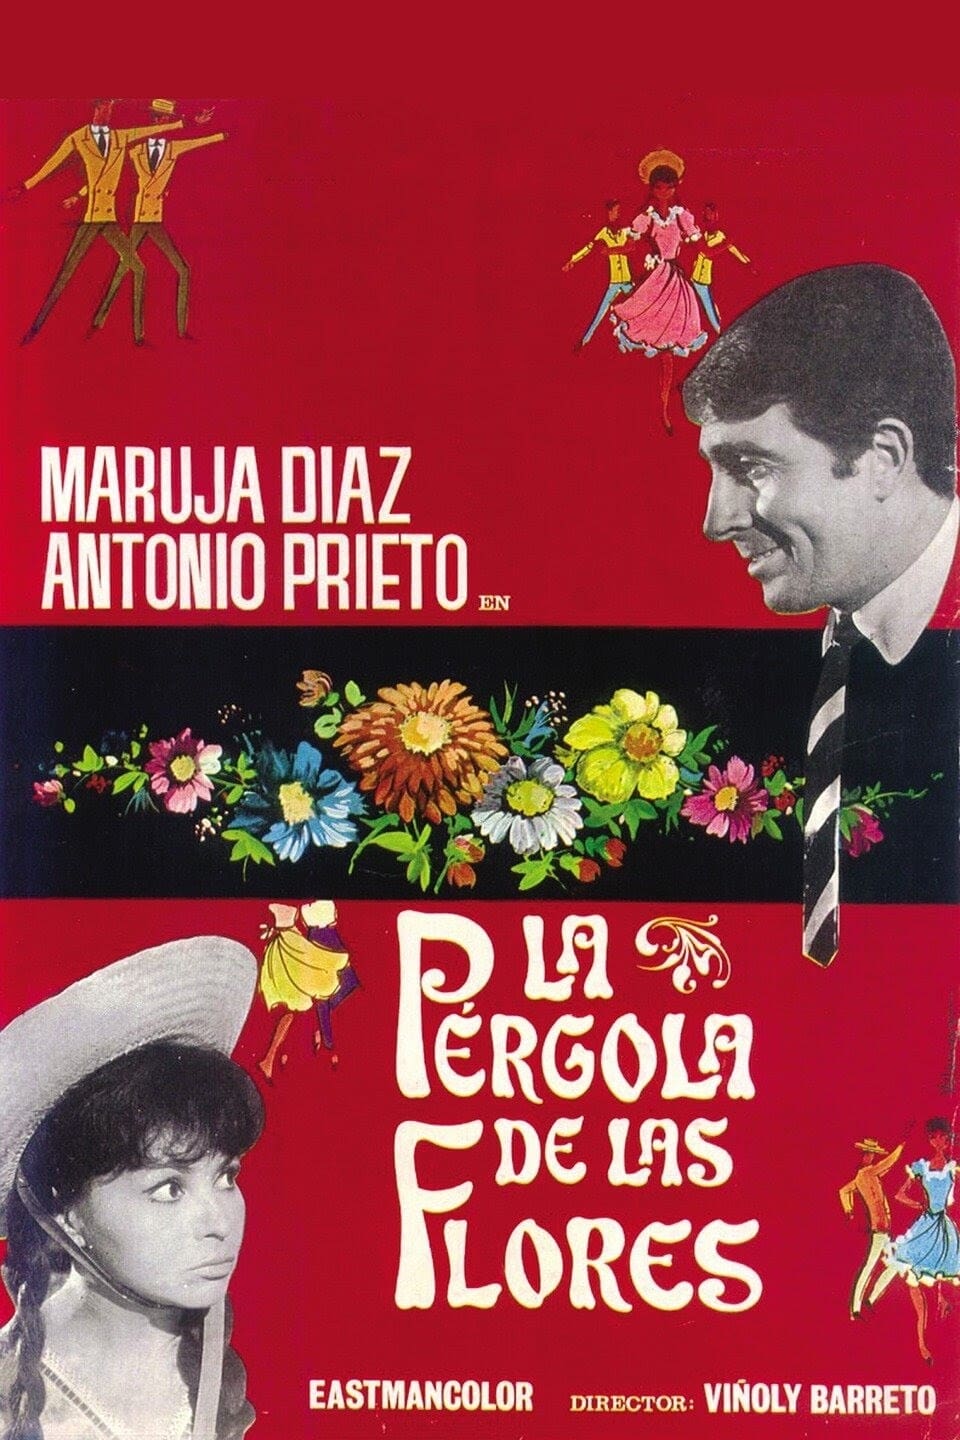 La pérgola de las flores (1965)